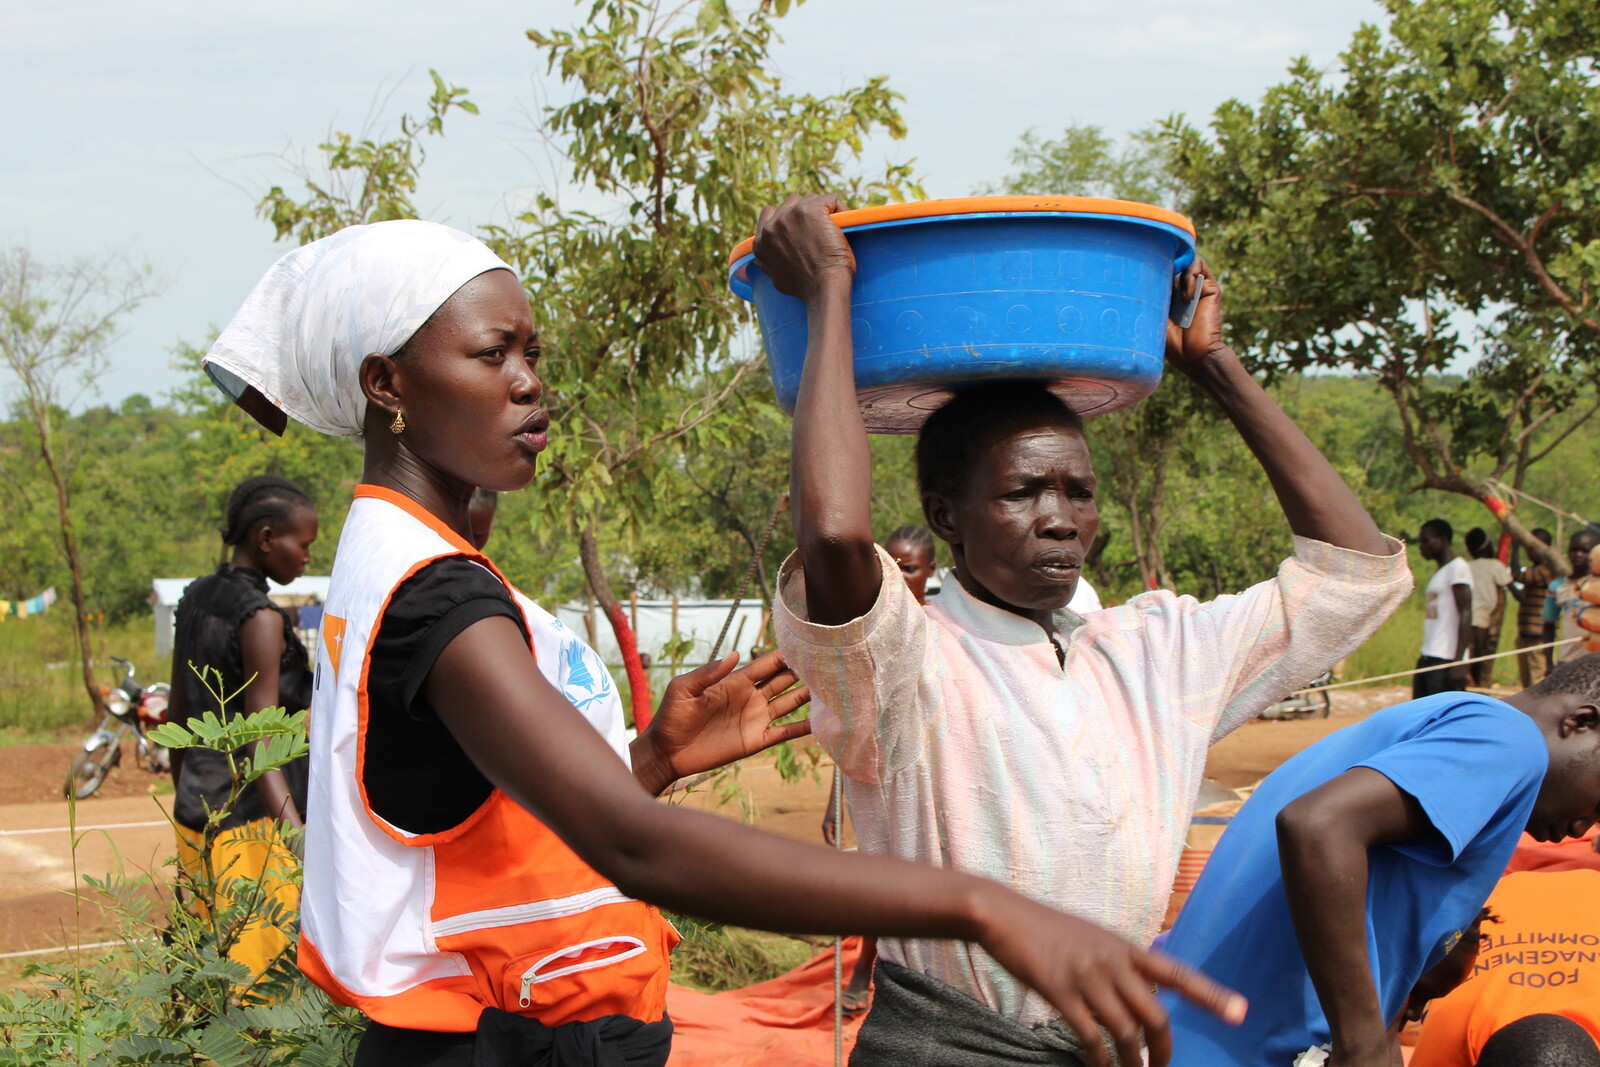 Angekommen in Uganda, erhalten Flüchtlinge aus dem Südsudan Nahrungsmittel.